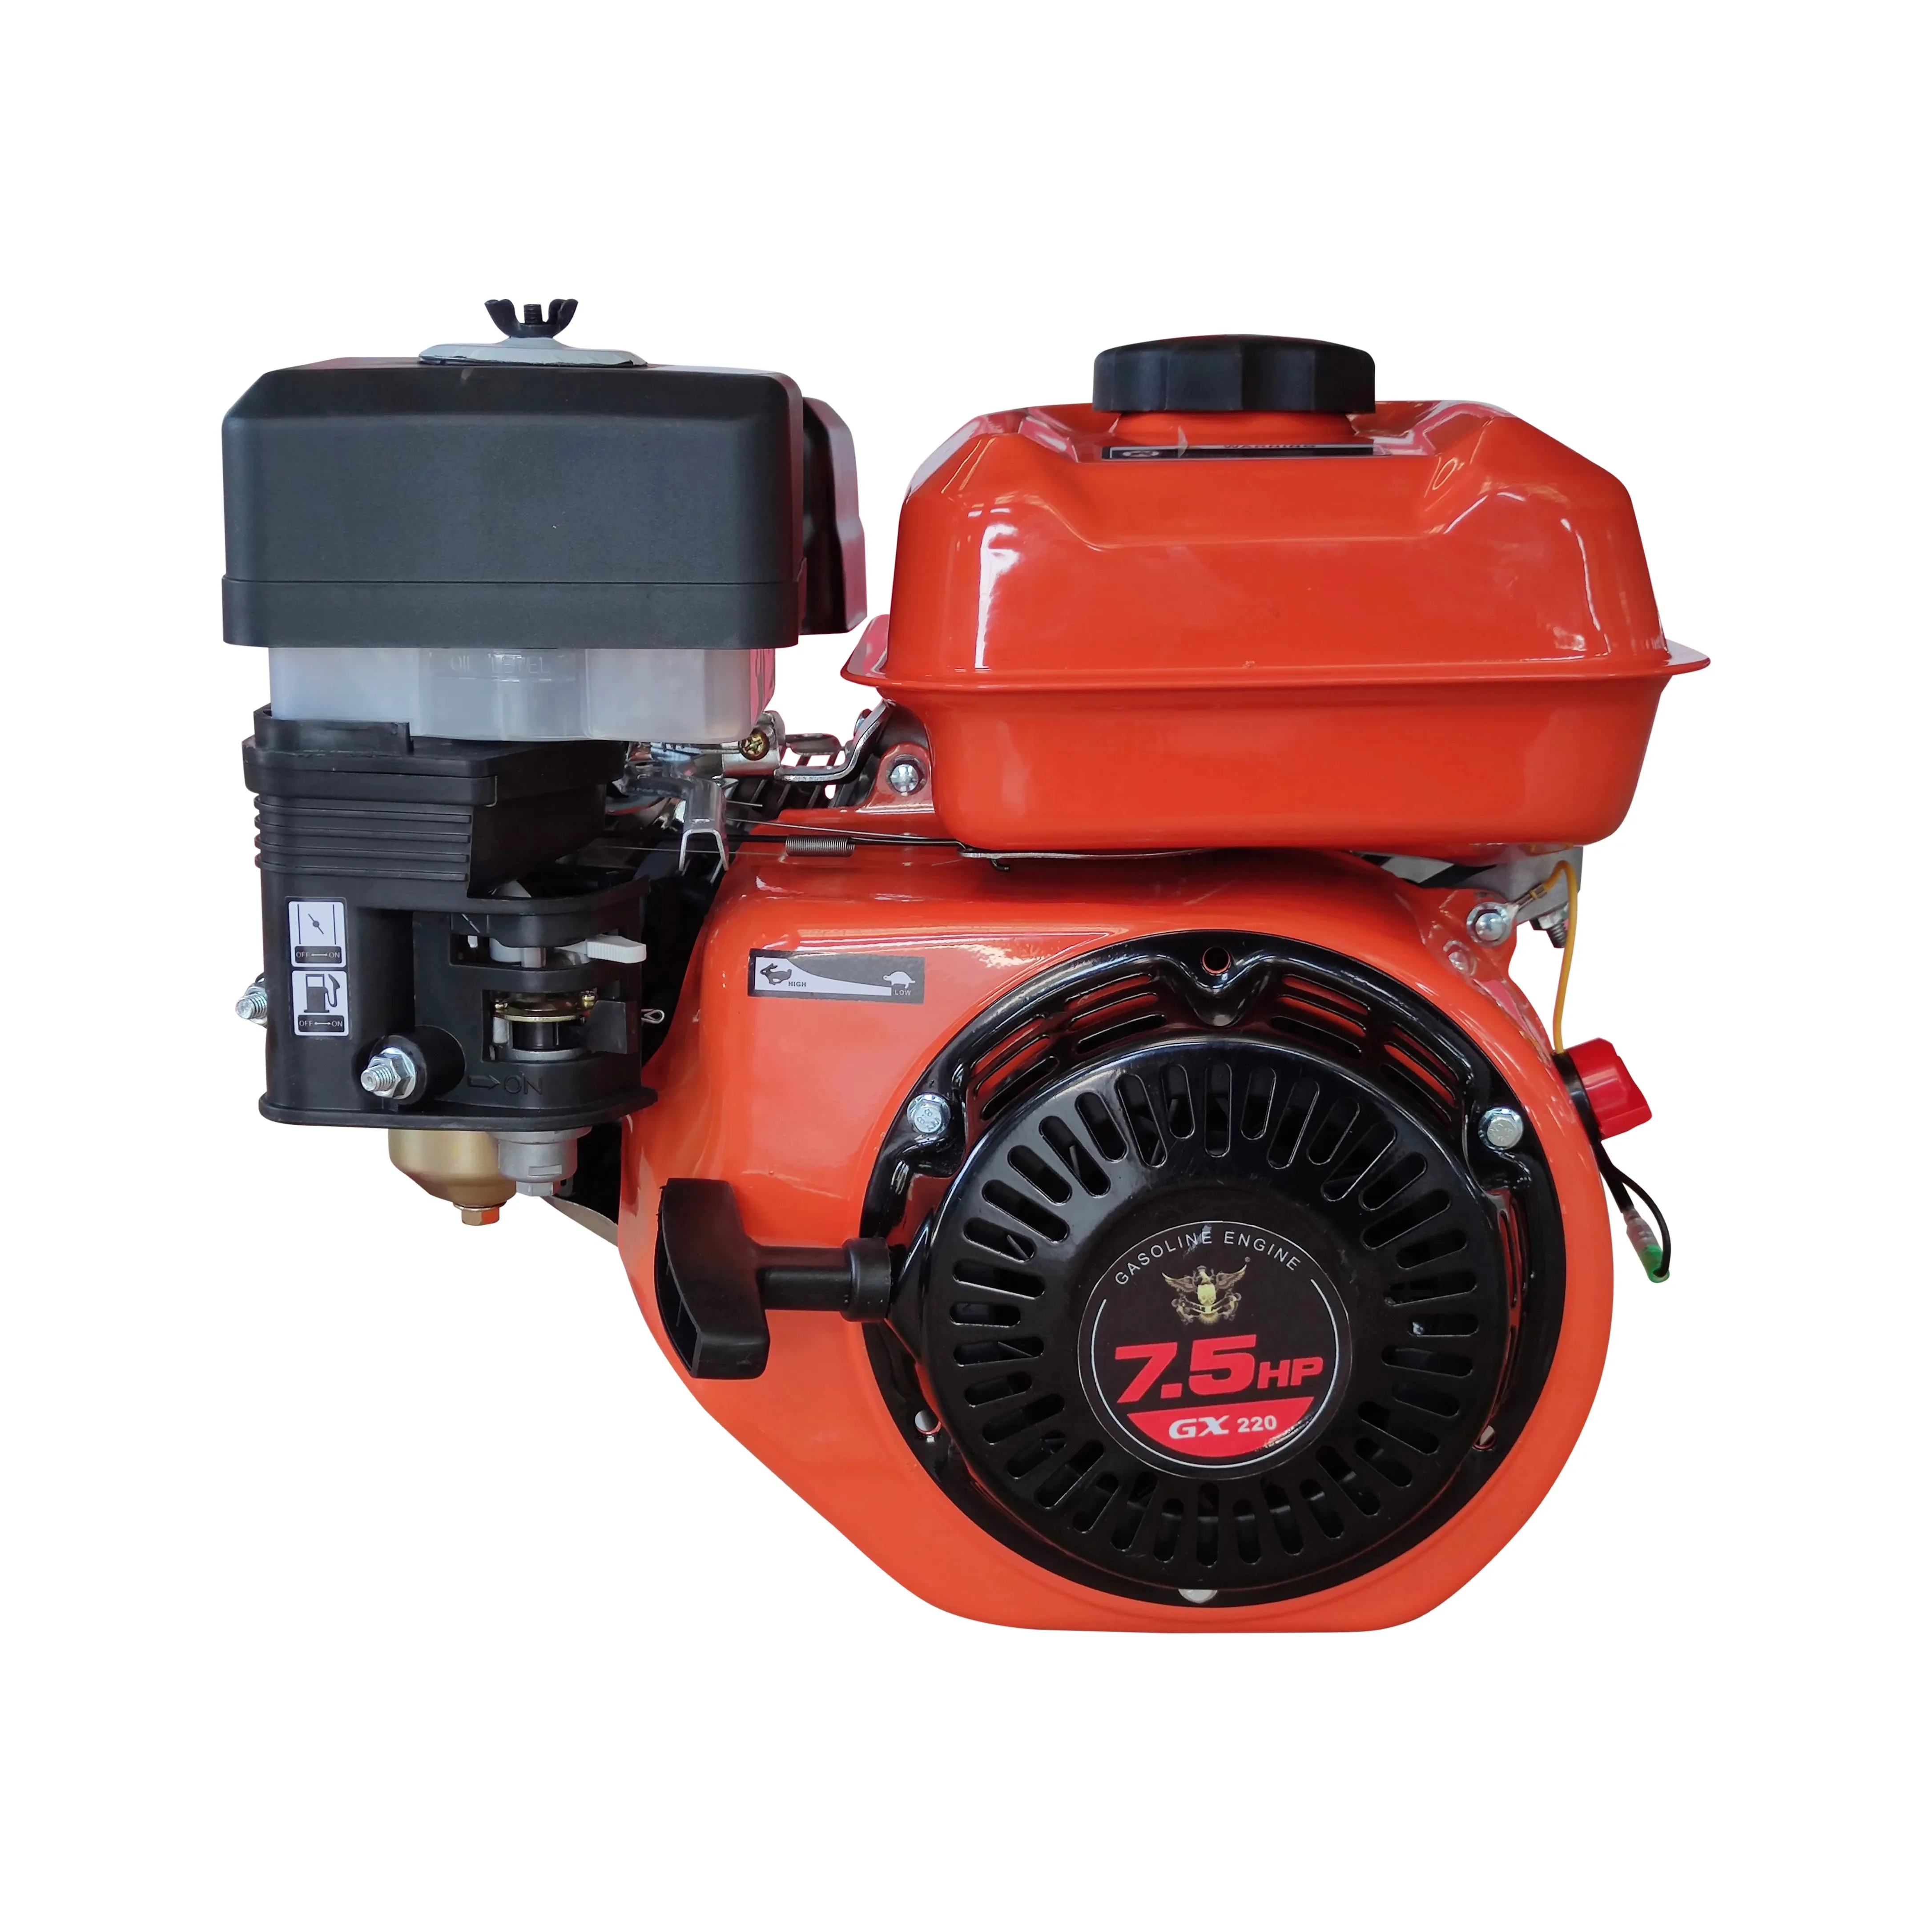 Ohv 7 Pk Benzinemotor 4-takt Eencilinder Gx220 Benzinemotor Voor Waterpompen Generatoren Landbouwsproeiers